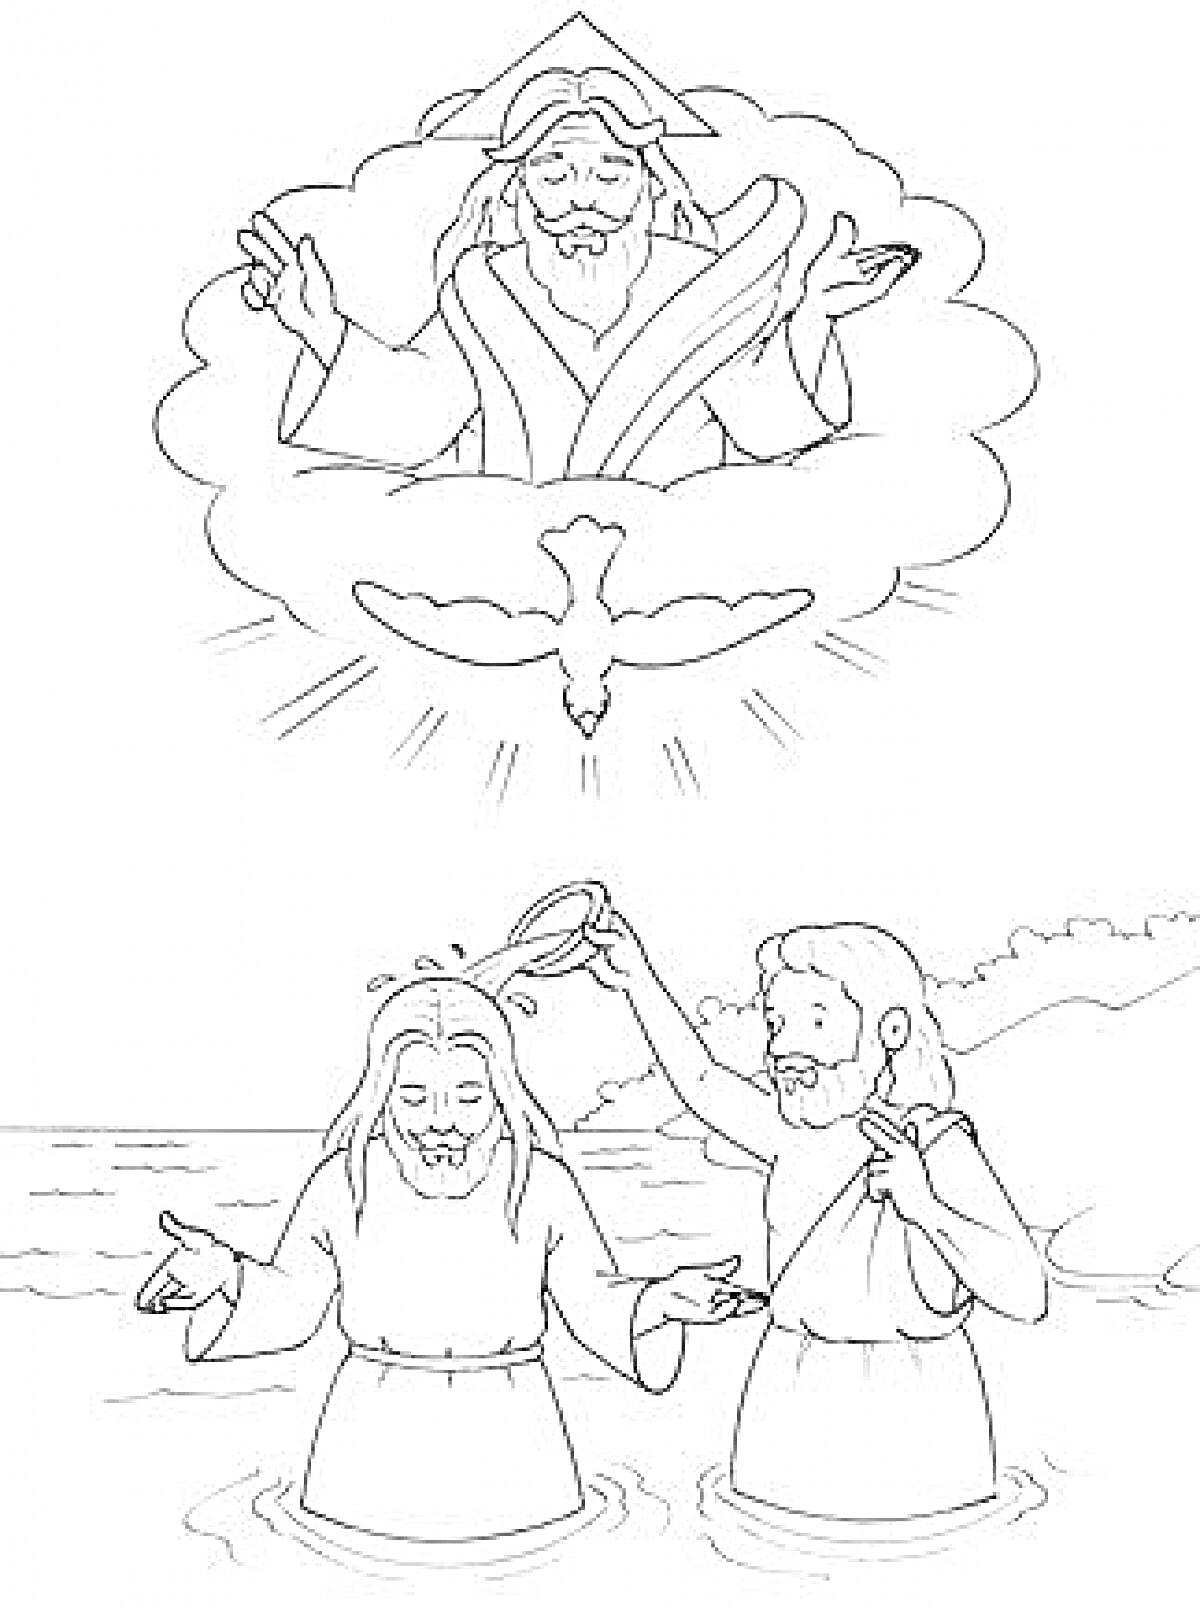 Раскраска Крещение Господне - крещение Иисуса в реке Иордан, святой дух в виде голубя и бог-отец на небесах